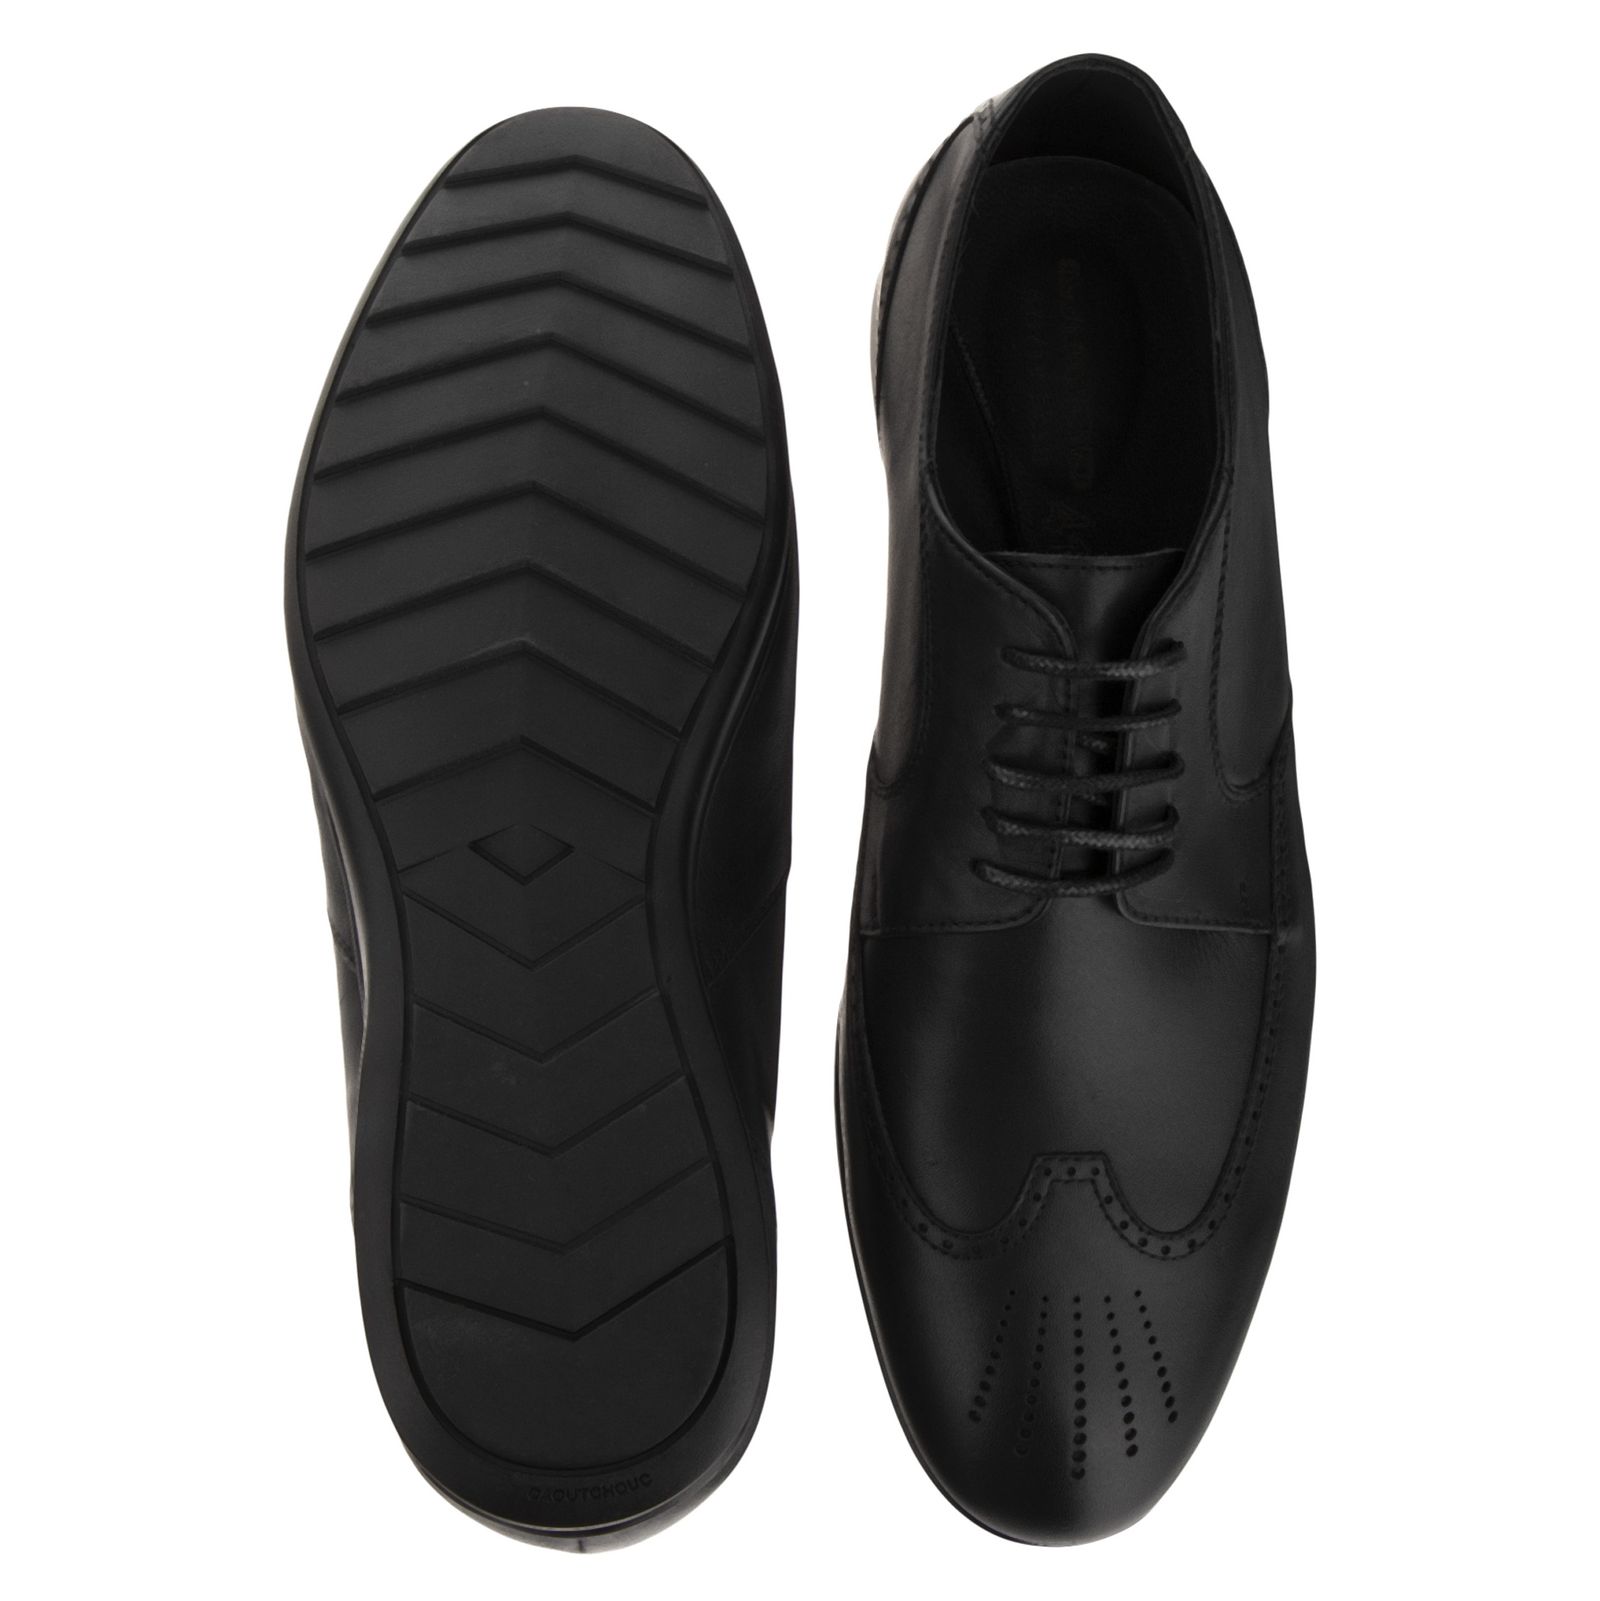 کفش مردانه گاندو مدل 99-701 - مشکی - 6